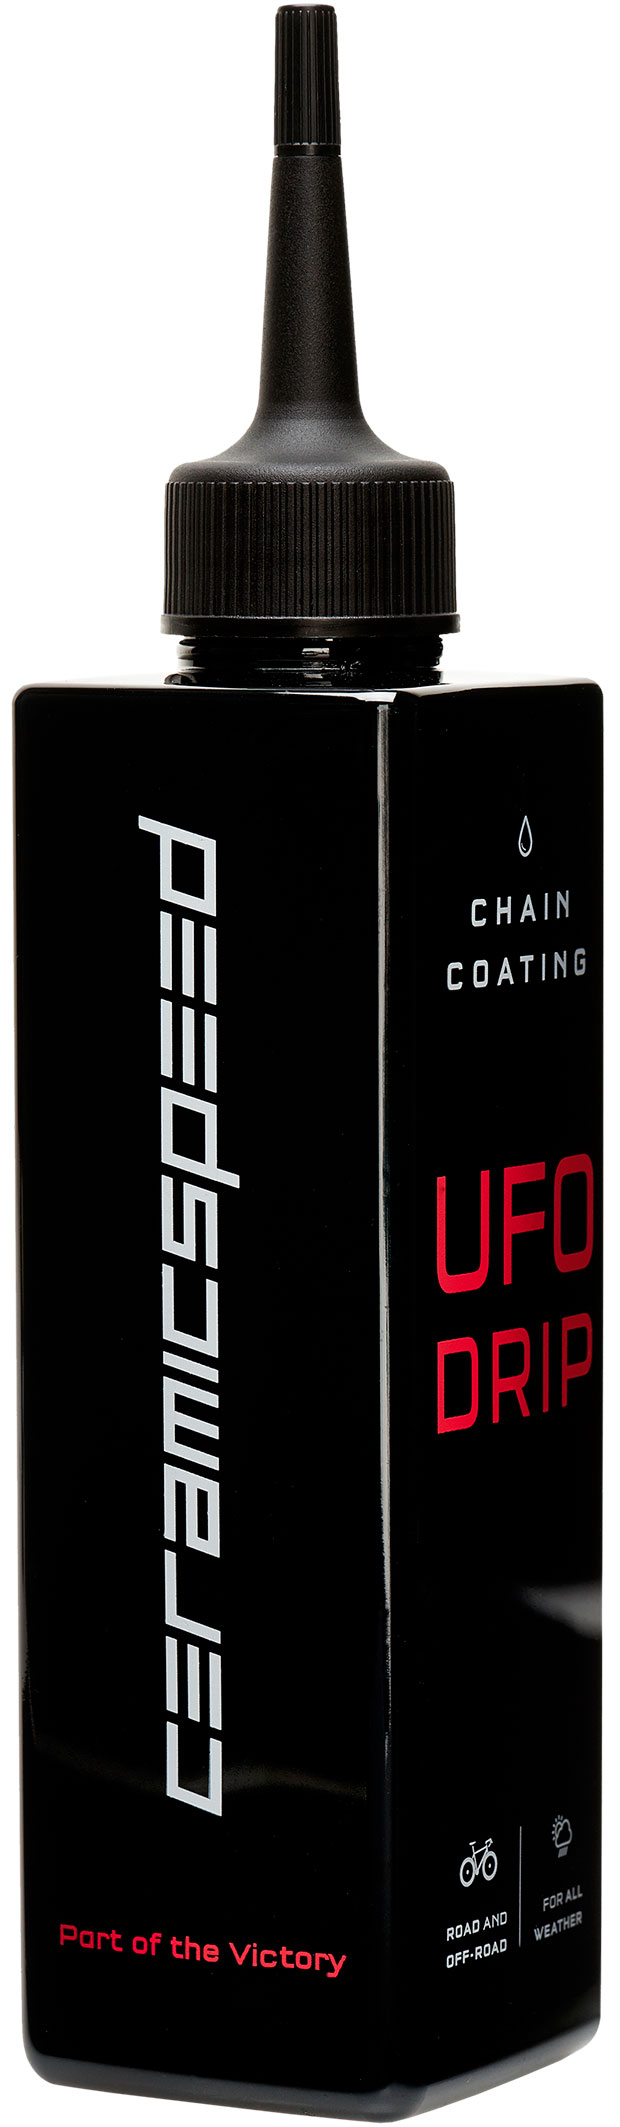 En TodoMountainBike: CeramicSpeed UFO Drip, el lubricante para cadenas más 'rápido' del mercado